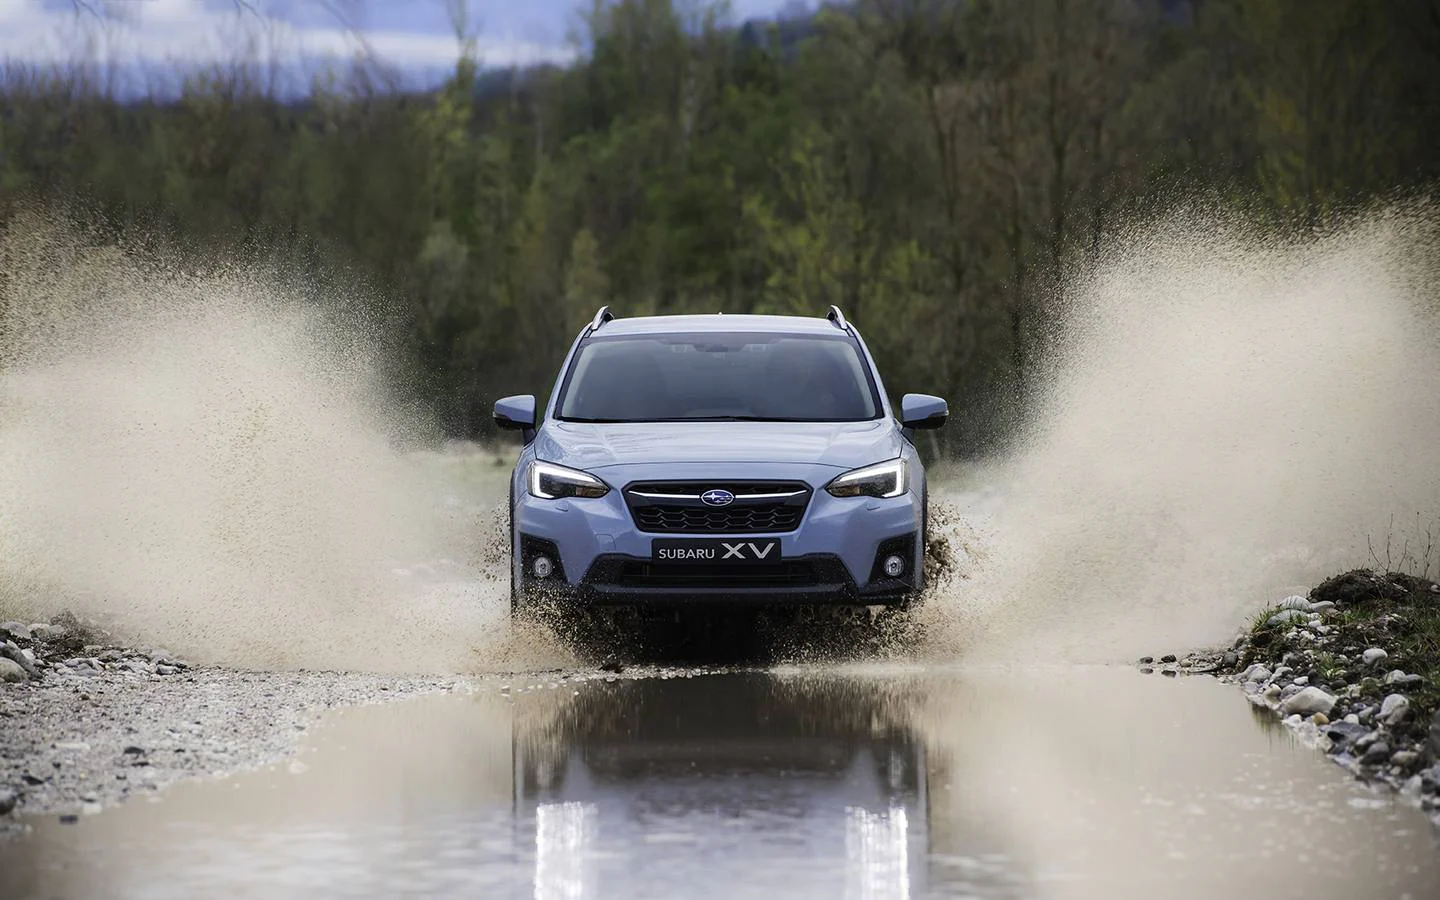 La segunda generación del Subaru XV empieza a venderse y las primeras unidades llegan a finales de año. Fiel a la tradición, equipa tracción a las cuatro ruedas, motor tipo bóxer y ahora solo se comercializa con cambio automático. La gama parte desde 21.900 euros que cuesta el 1.600.